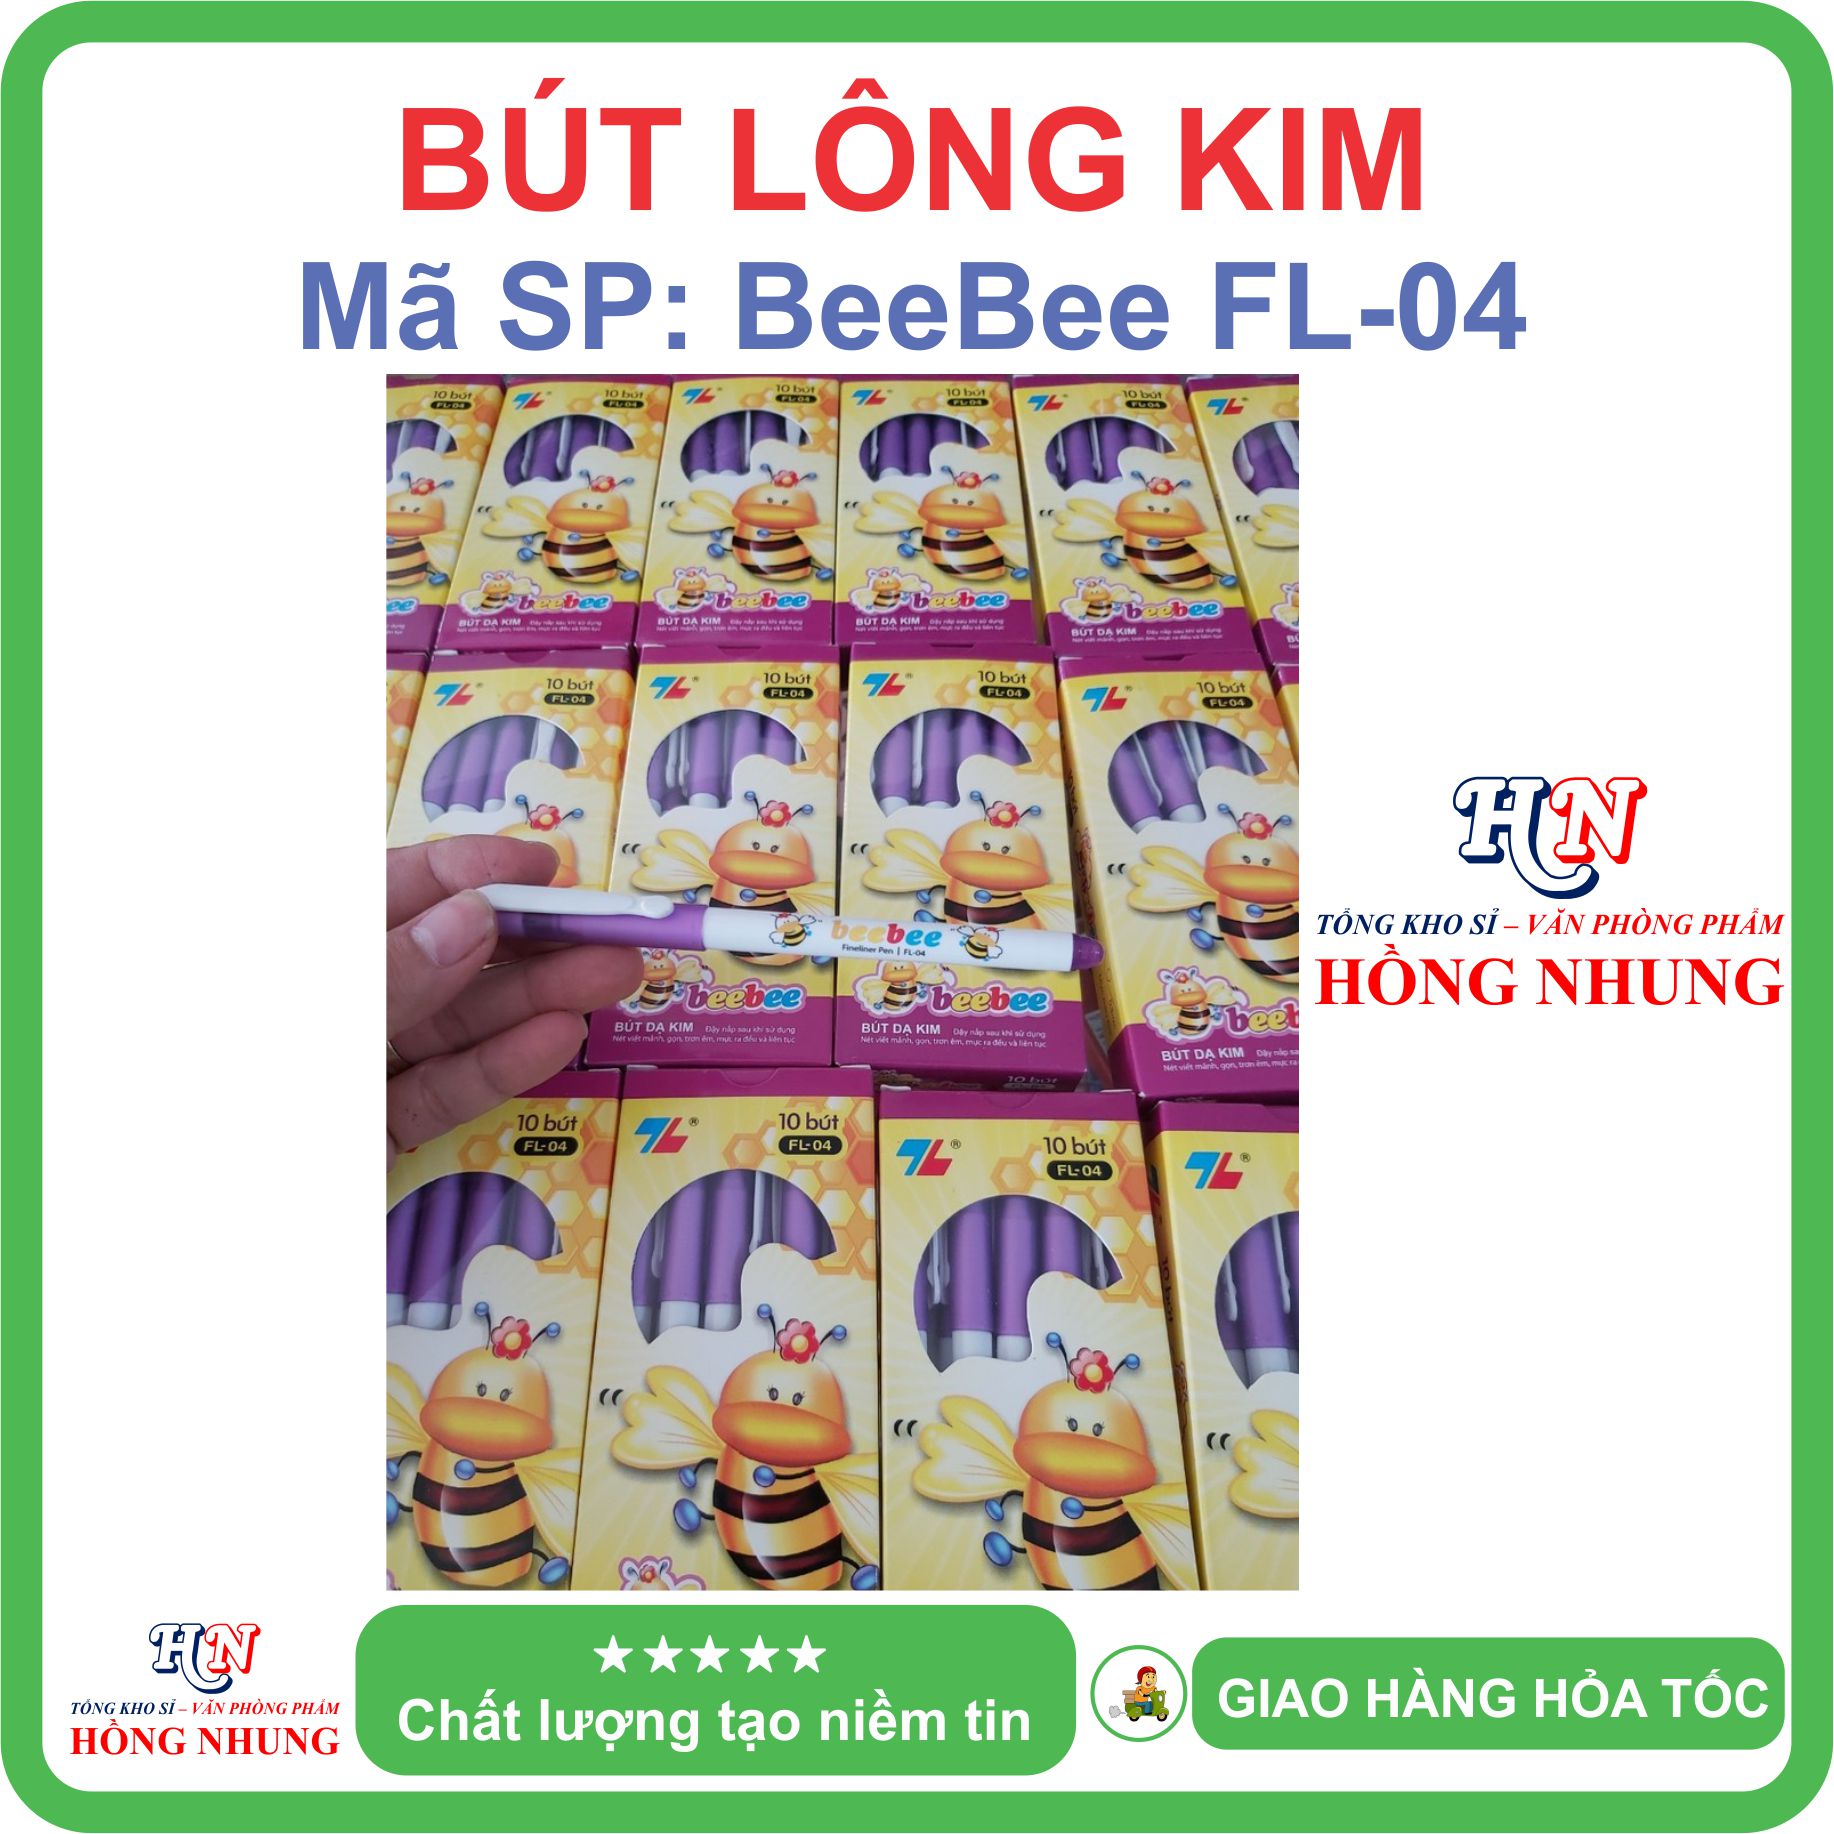 [SALE] Bút lông kim con ong Beebee FL-04, Bút Thiên Long, An Toàn, Không Độc Hại, Kiểu dáng dễ thương